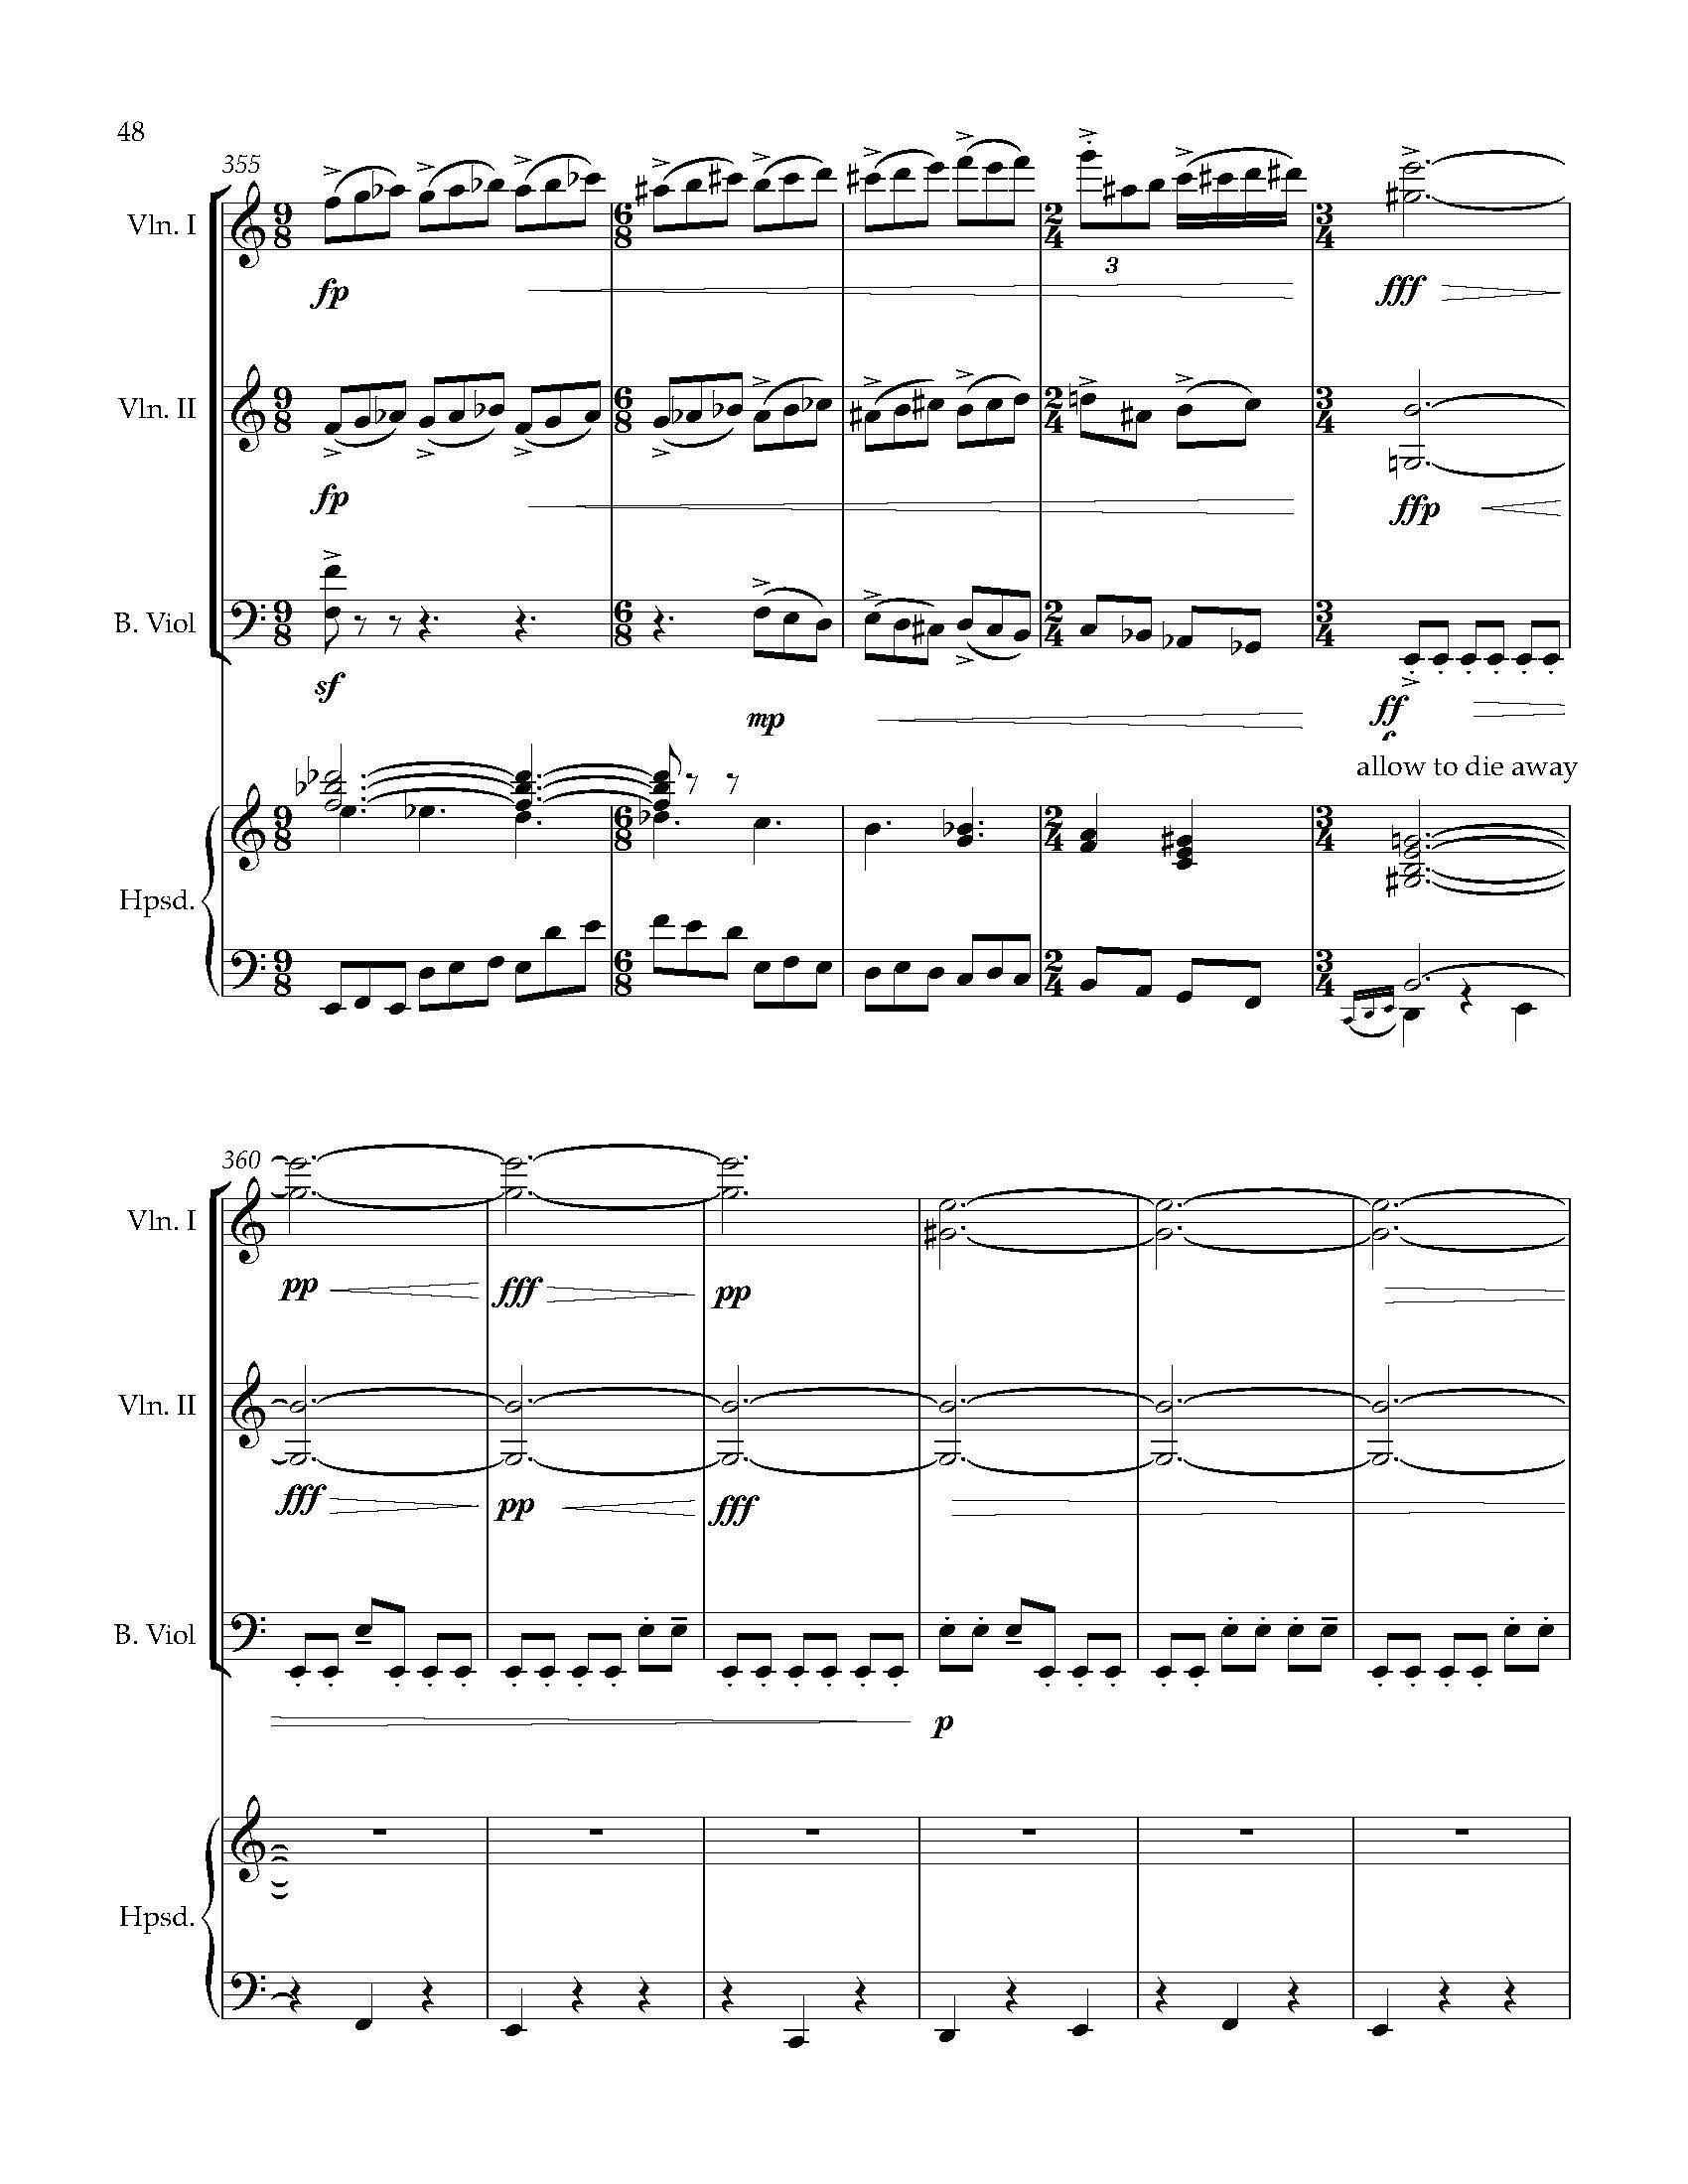 Sonata Sonare - Complete Score_Page_54.jpg